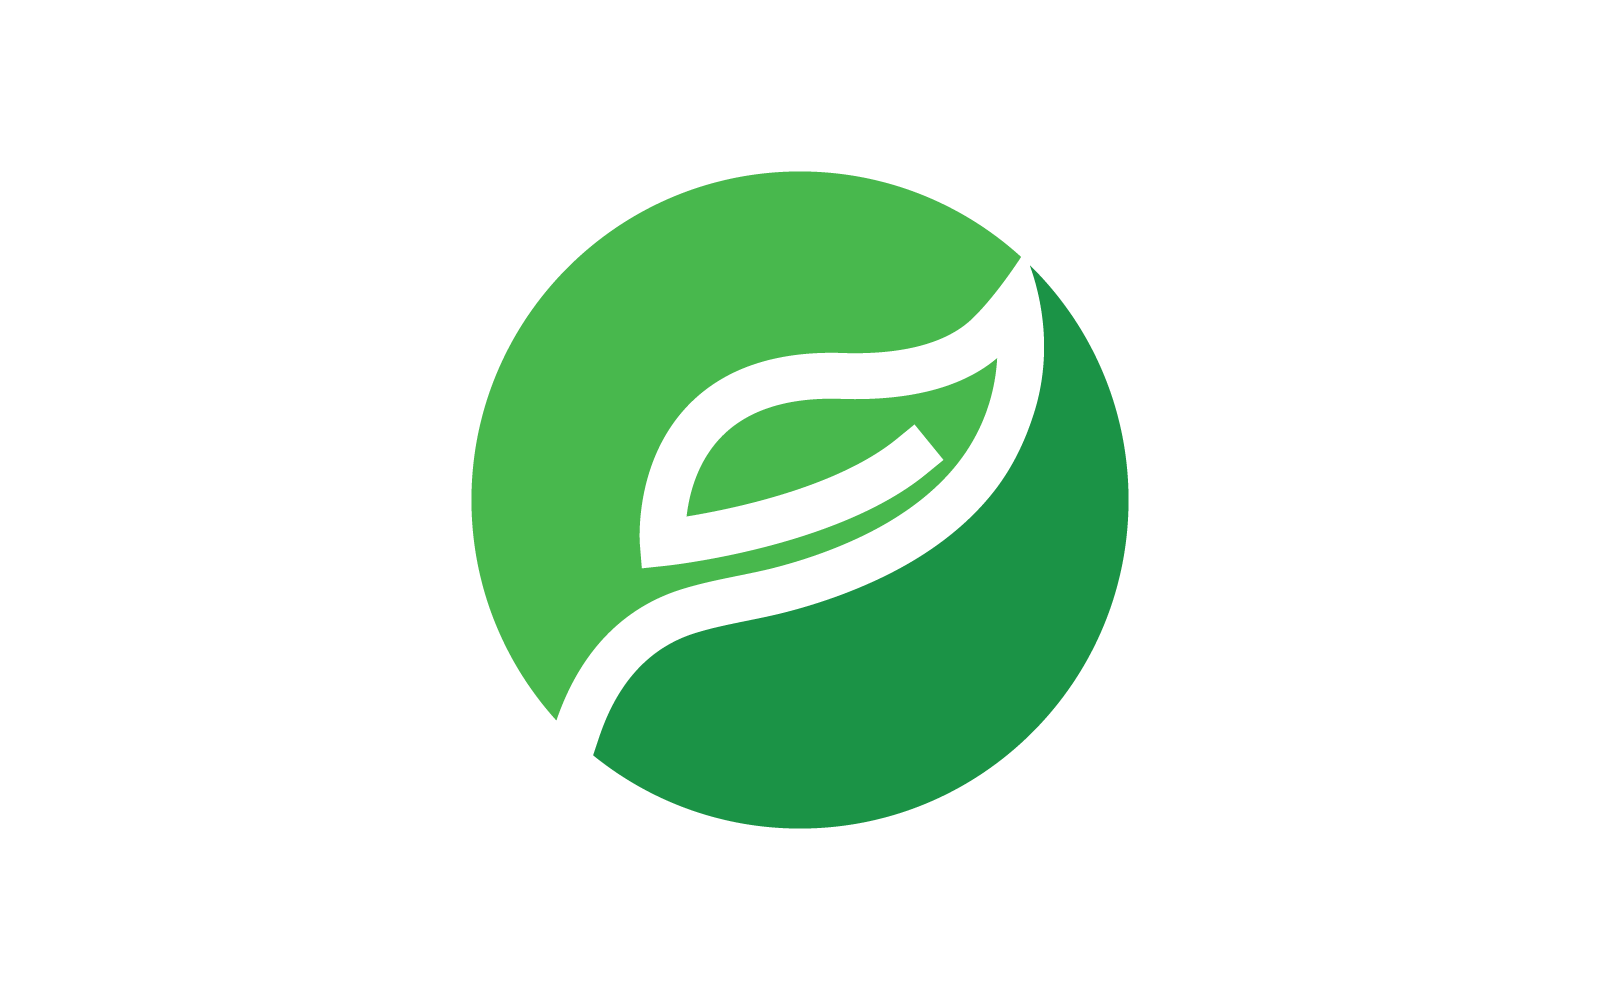 Green leaf illustration logo template flat design